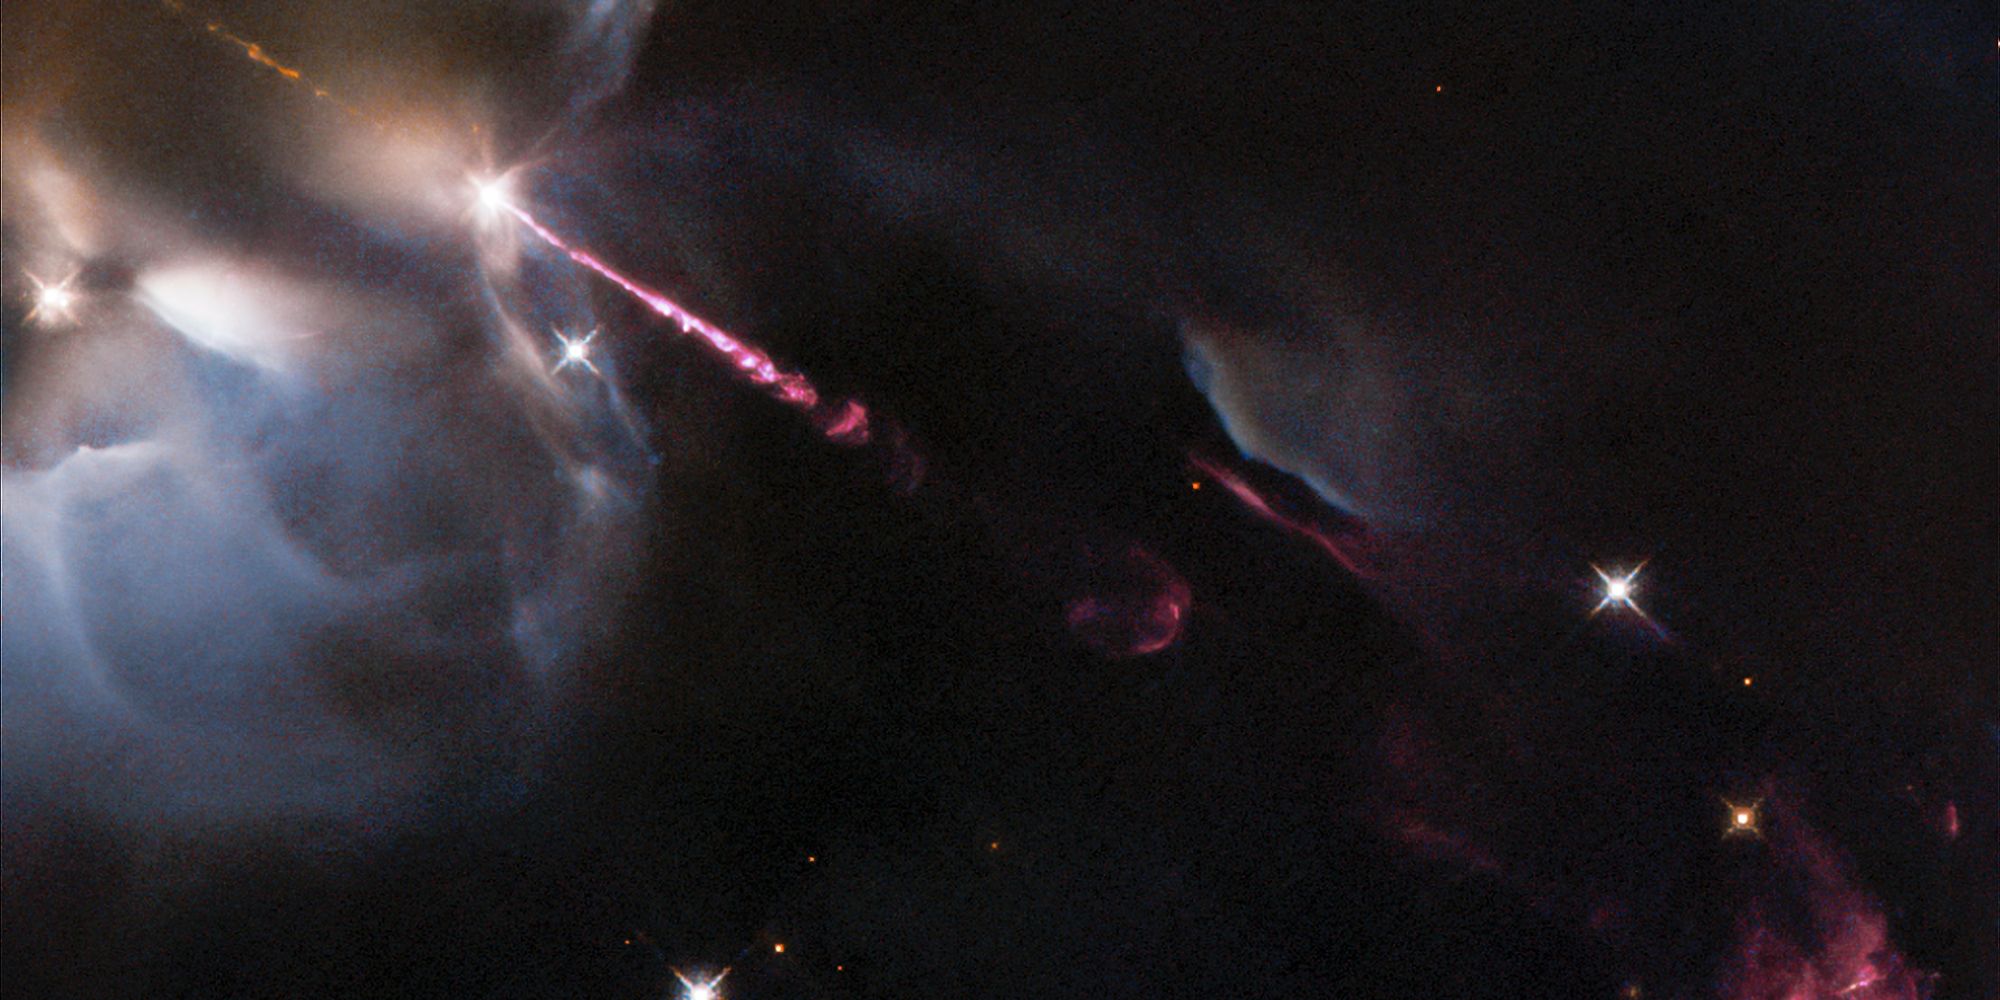 Esta foto del Hubble de una estrella bebé lanzando una 'rabieta estelar' es una locura